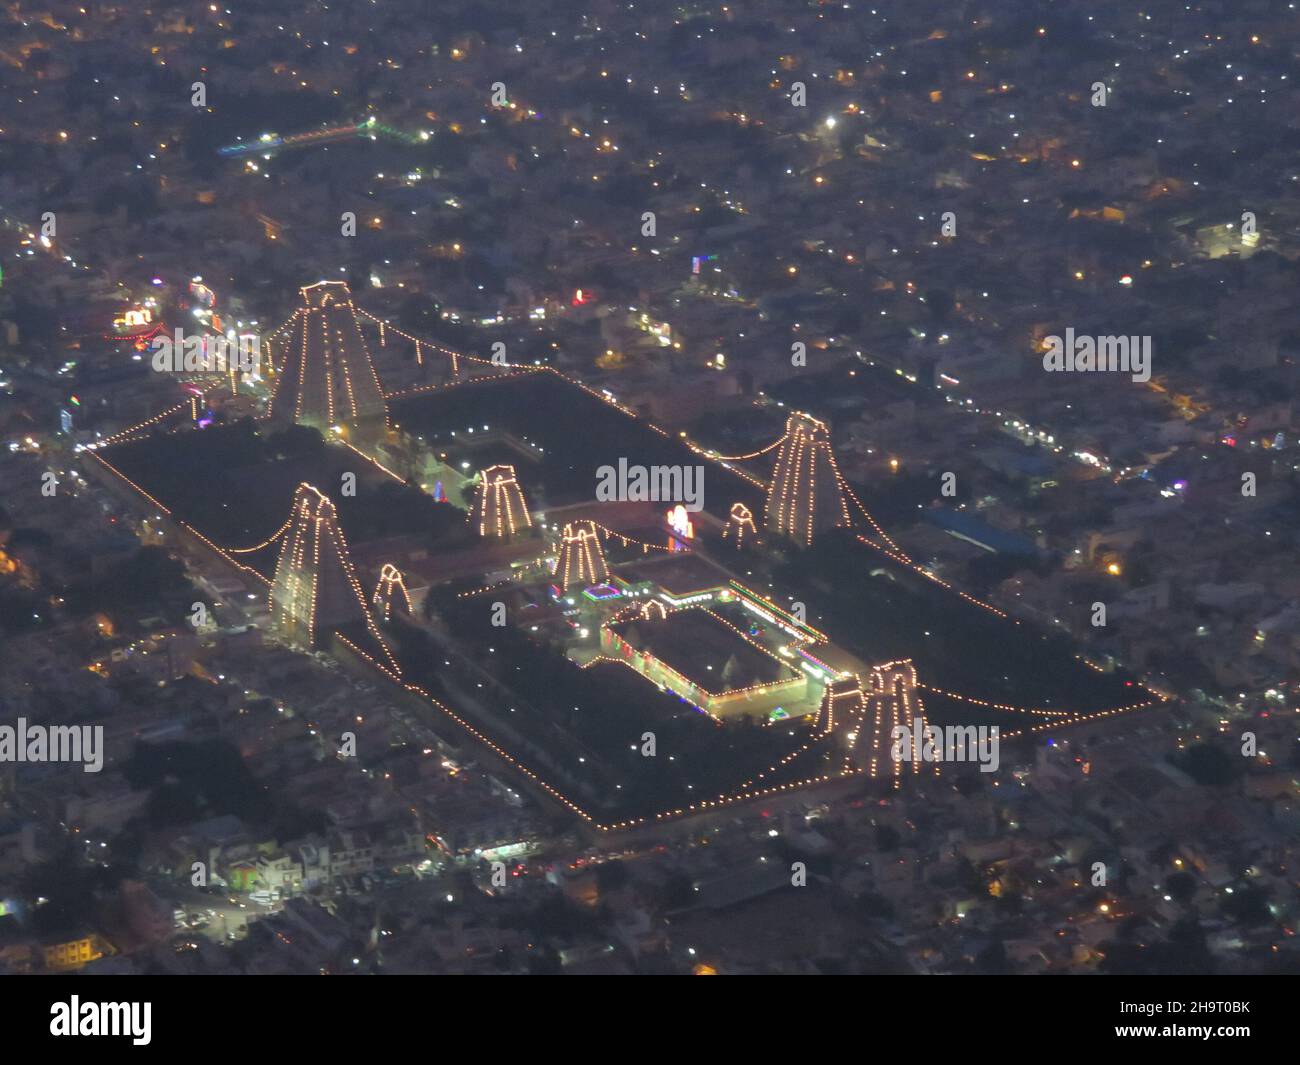 Veduta aerea del festival di Karthika Deepam, il festival delle luci osservato dagli indù del Tamil Nadu. Foto Stock